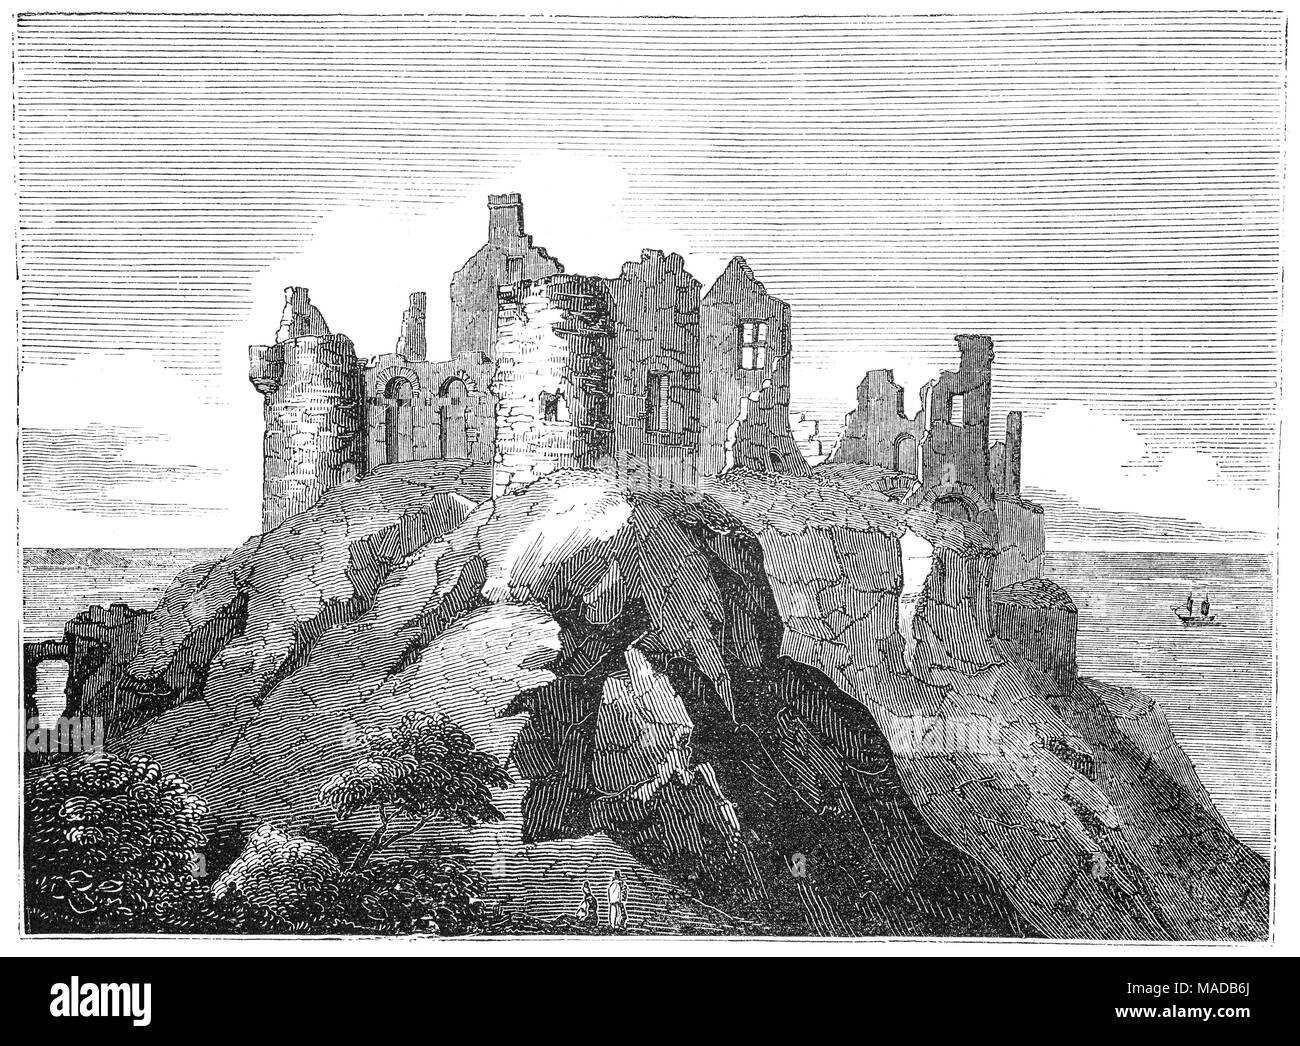 Dunluce Castle è una rovina il castello medievale in Irlanda del Nord, situato sul bordo di un affioramento di basalto tra Portballintrae e Portrush nella contea di Antrim. Circondato da estremamente ripido scende su entrambi i lati, è accessibile attraverso un ponte di collegamento con la terraferma (appena visibile a sinistra.) Richard Óg de Burgh, 2nd Earl of Ulster, costruito il primo castello di Dunluce nel XIII secolo. Più tardi si è servita come sede del conte di Antrim fino a quando l'impoverimento della MacDonnells nel 1690, dopo la battaglia del Boyne. Foto Stock